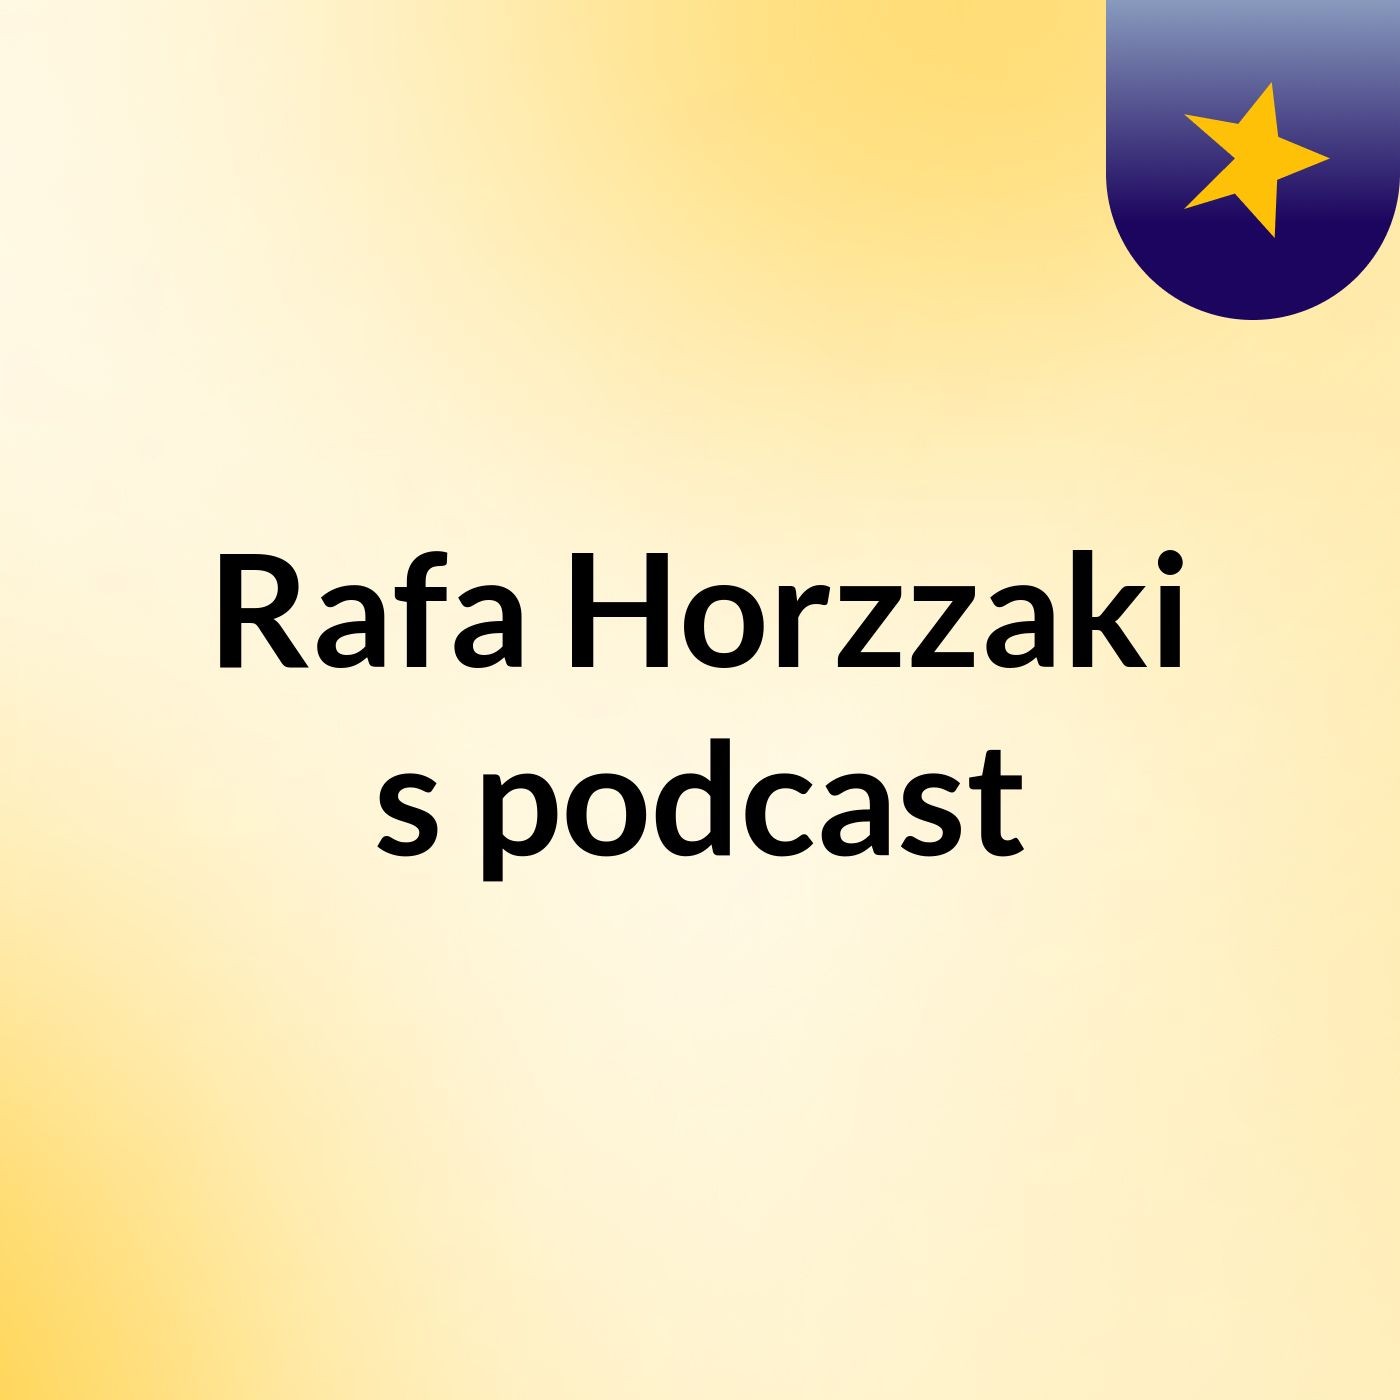 Rafa Horzzaki's podcast